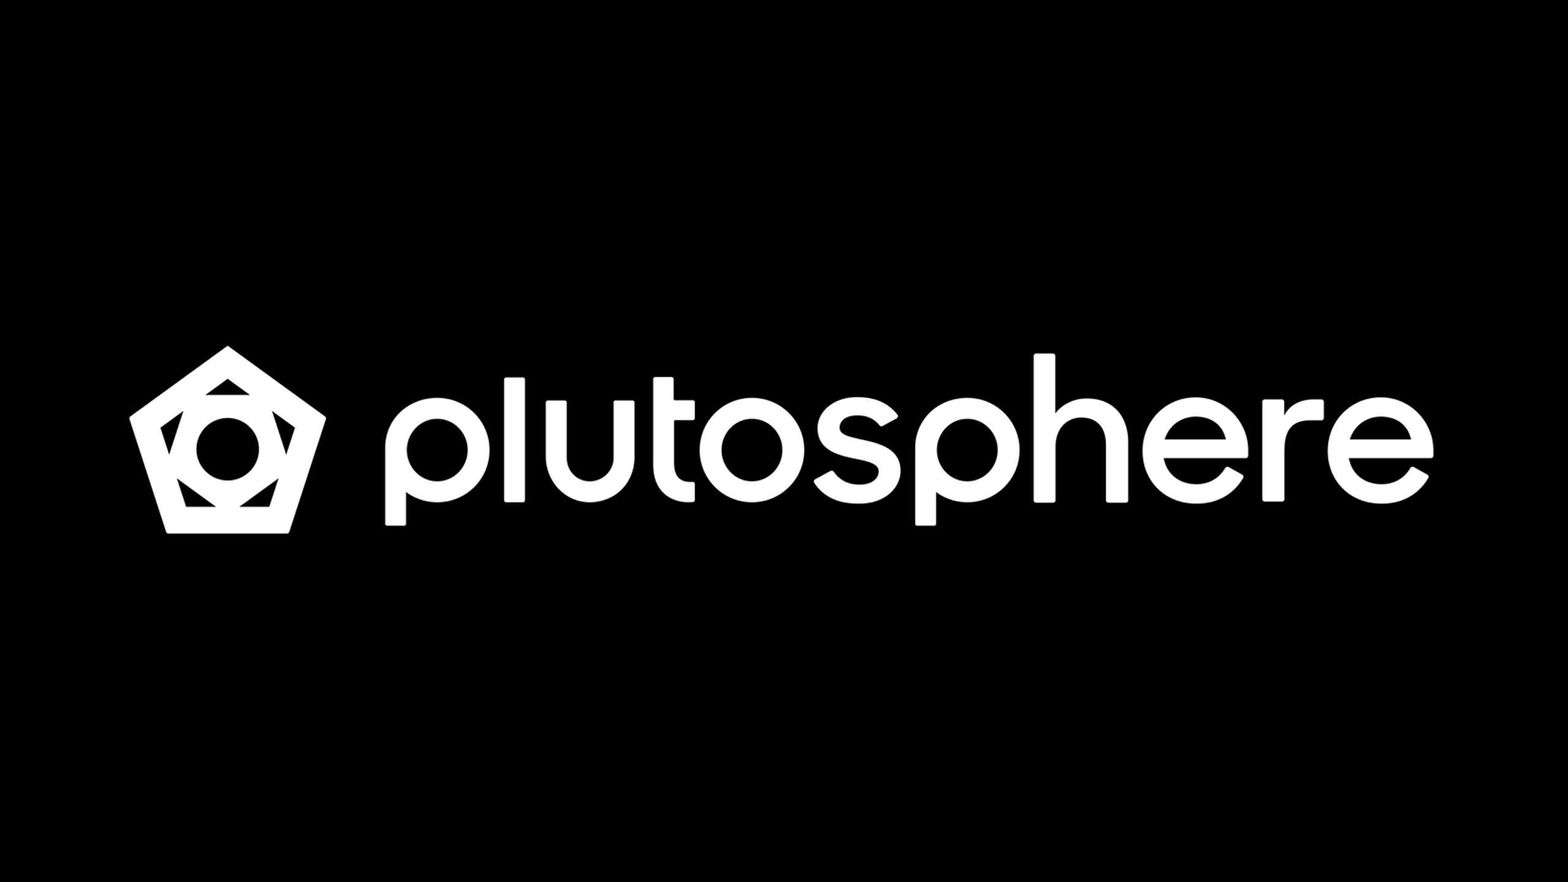 PlutoSphere